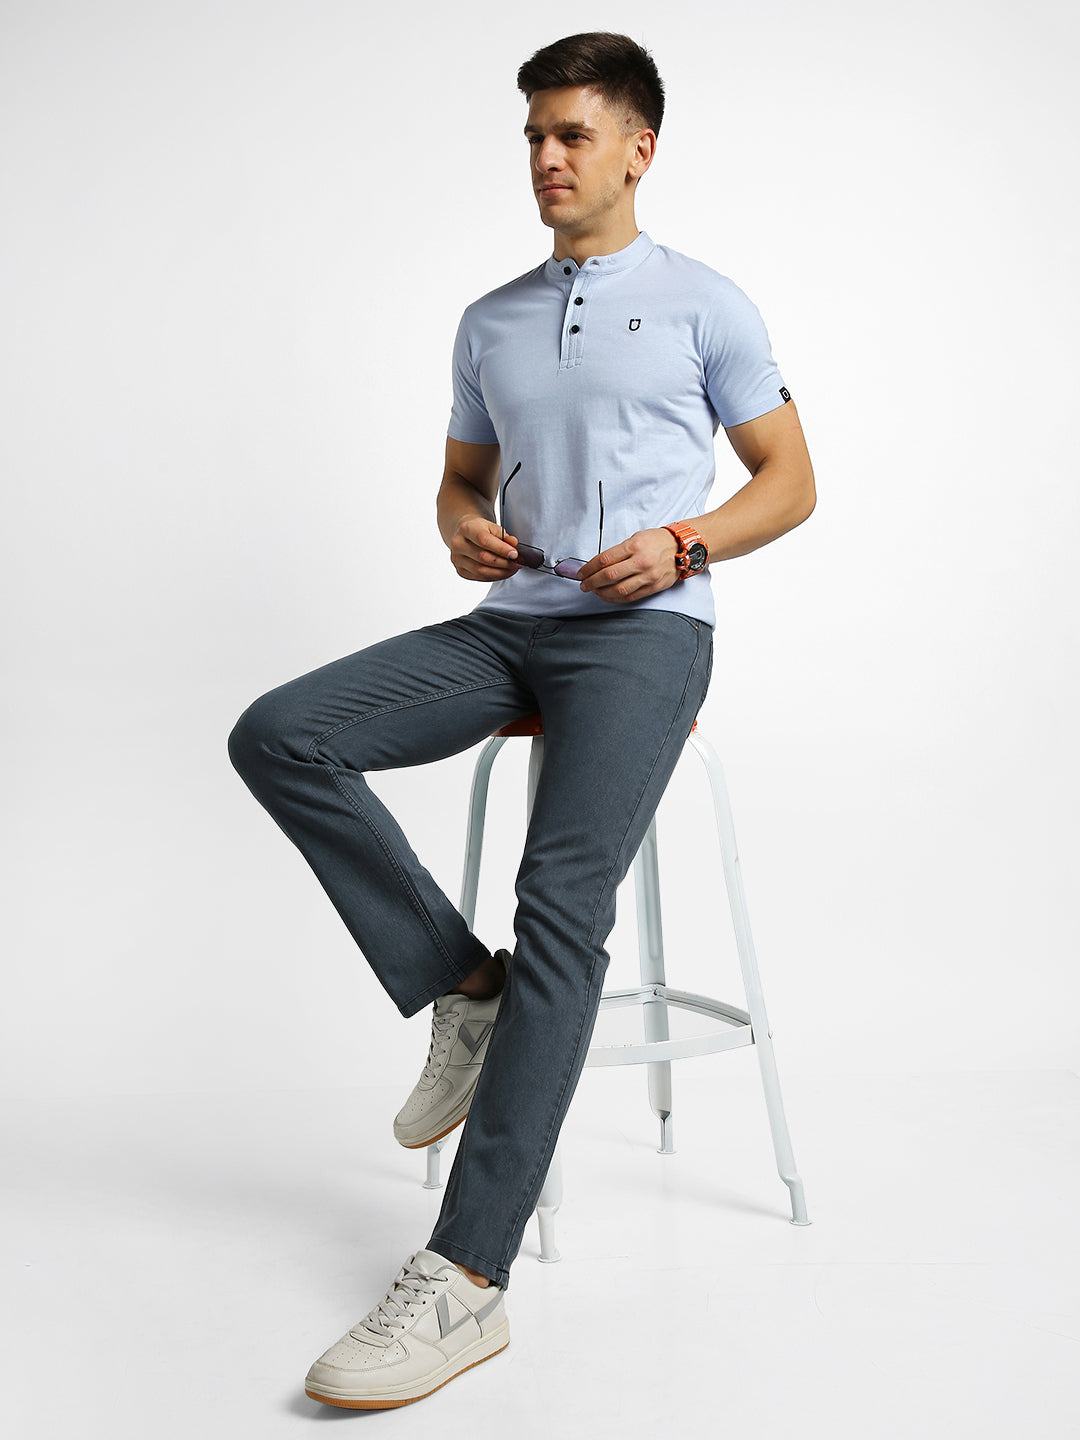 Men's Mild Grey Regular Fit Washed Jeans Stretchable